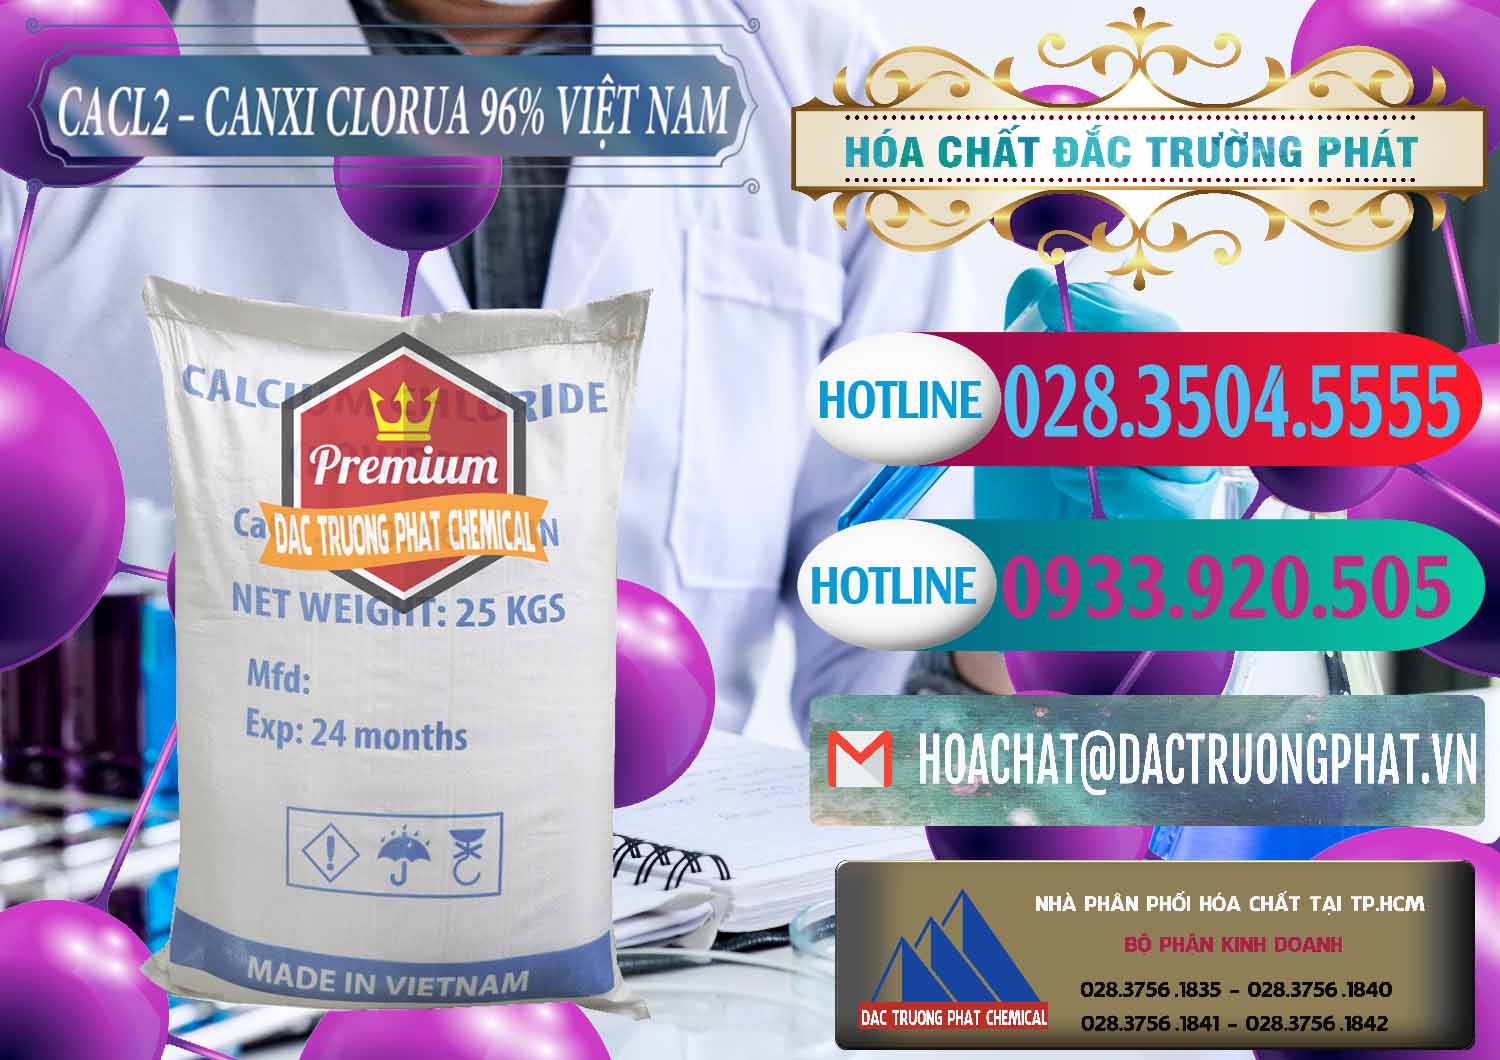 Cty chuyên kinh doanh - phân phối CaCl2 – Canxi Clorua 96% Việt Nam - 0236 - Bán và cung cấp hóa chất tại TP.HCM - truongphat.vn